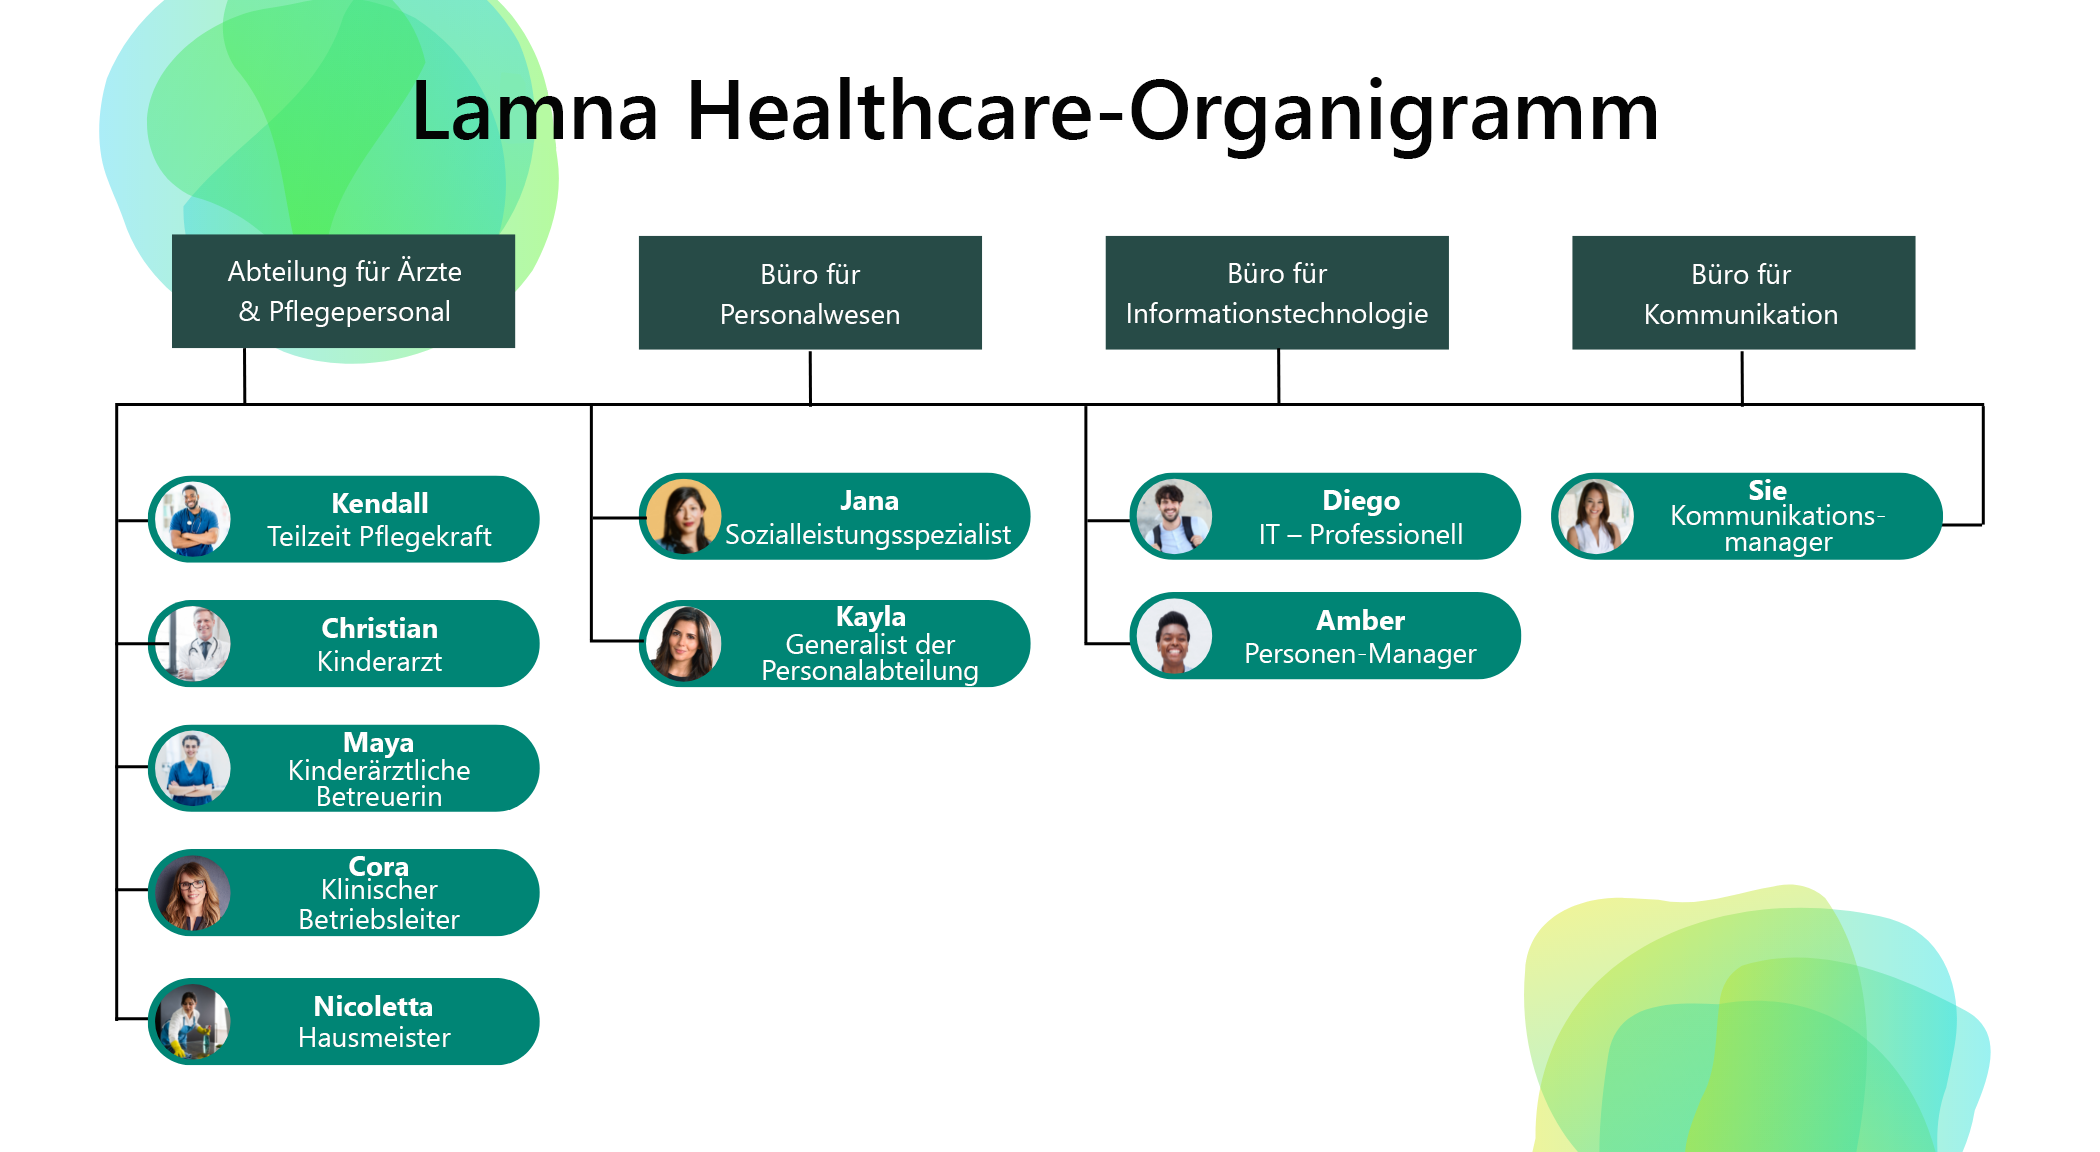 Diagramm, das eine vereinfachte Organisationsstruktur von Lamna Healthcare zeigt.